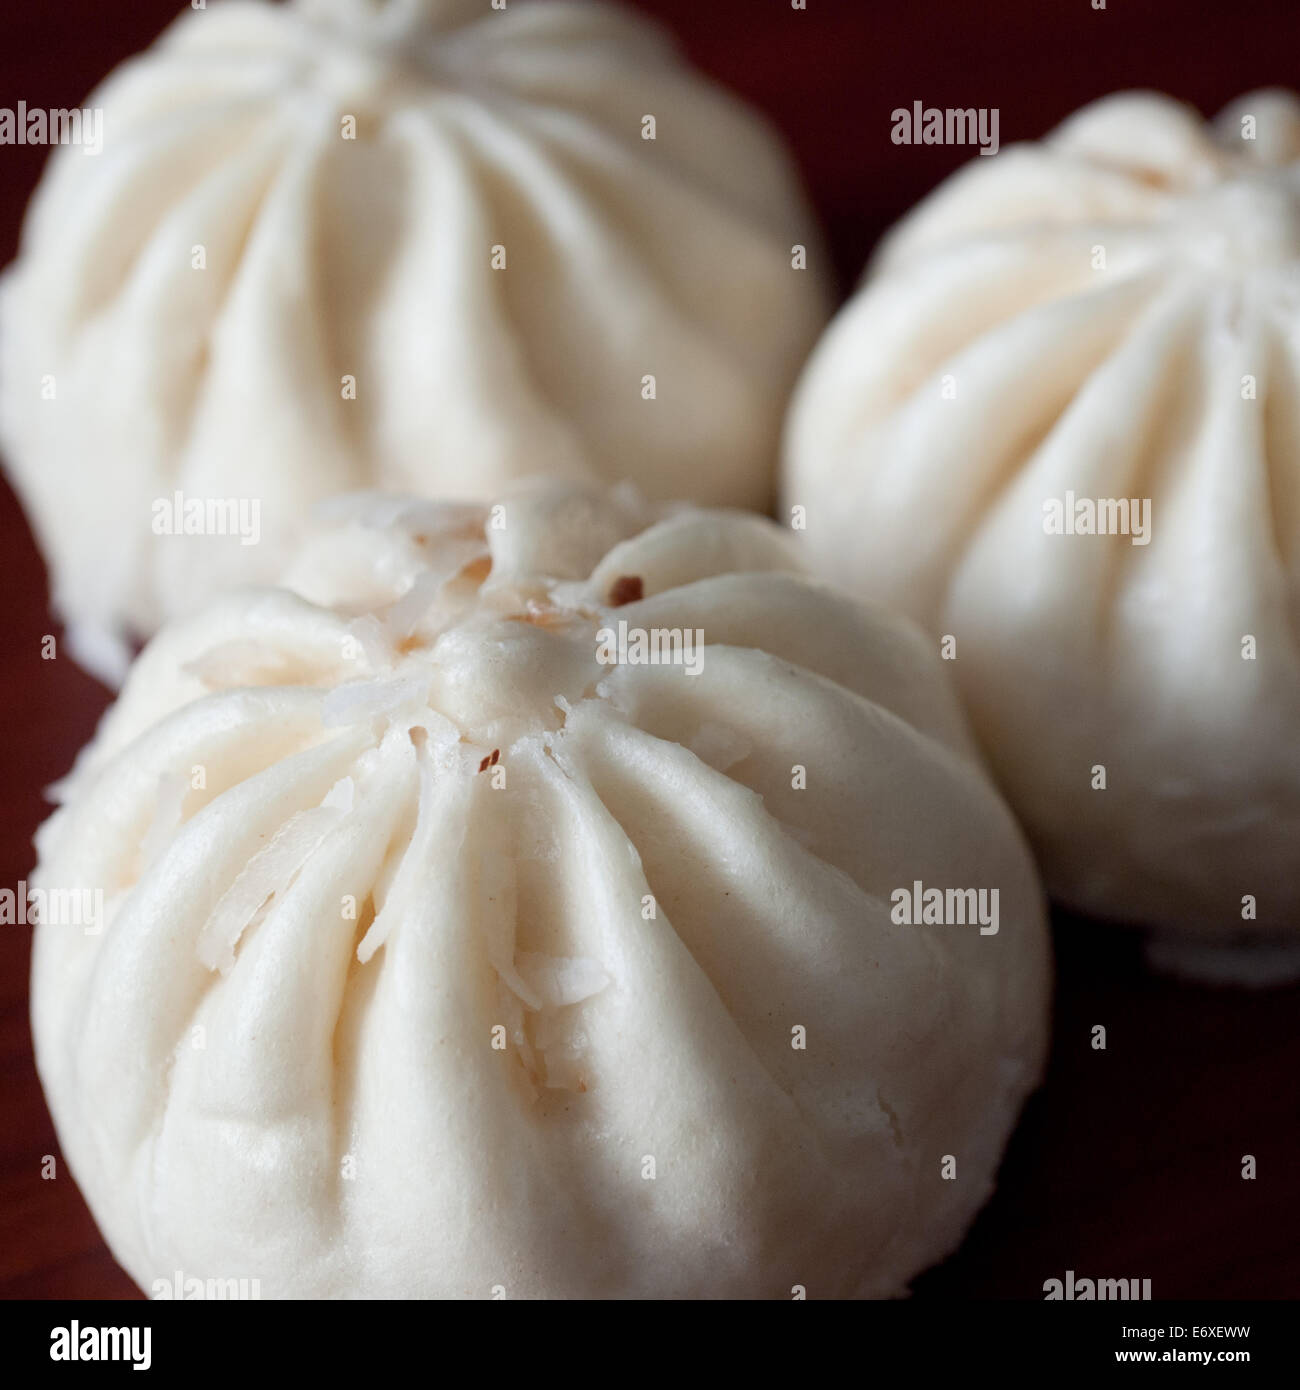 Bao (Baozi), ou un type de Chinese steamed bun. Ceux ci sont de Wow Bao, un restaurant de la région de Chicago Bao. Banque D'Images